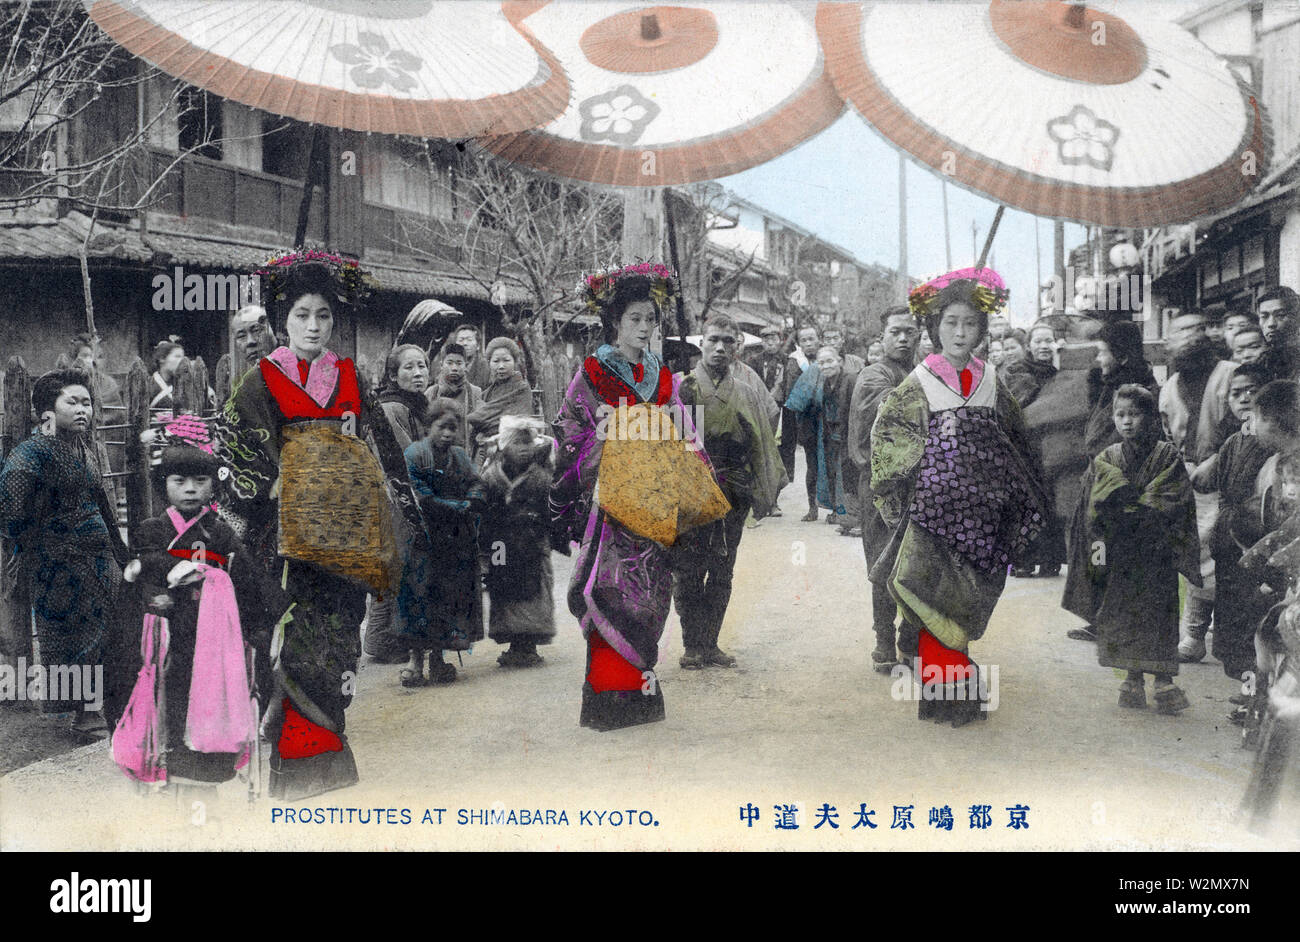 [1900s Japan - Parade der High Class Prostituierte] - Oiran Dochu, eine Parade von Tayuu (high class Prostituierte) in ihre wunderschönen Kimono in der lizenzierten Bordell Bezirk von Shimabara in Kyoto. Jede tayuu wird durch eine Kamuro, ein Kind attendant flankiert. 20. jahrhundert alte Ansichtskarte. Stockfoto